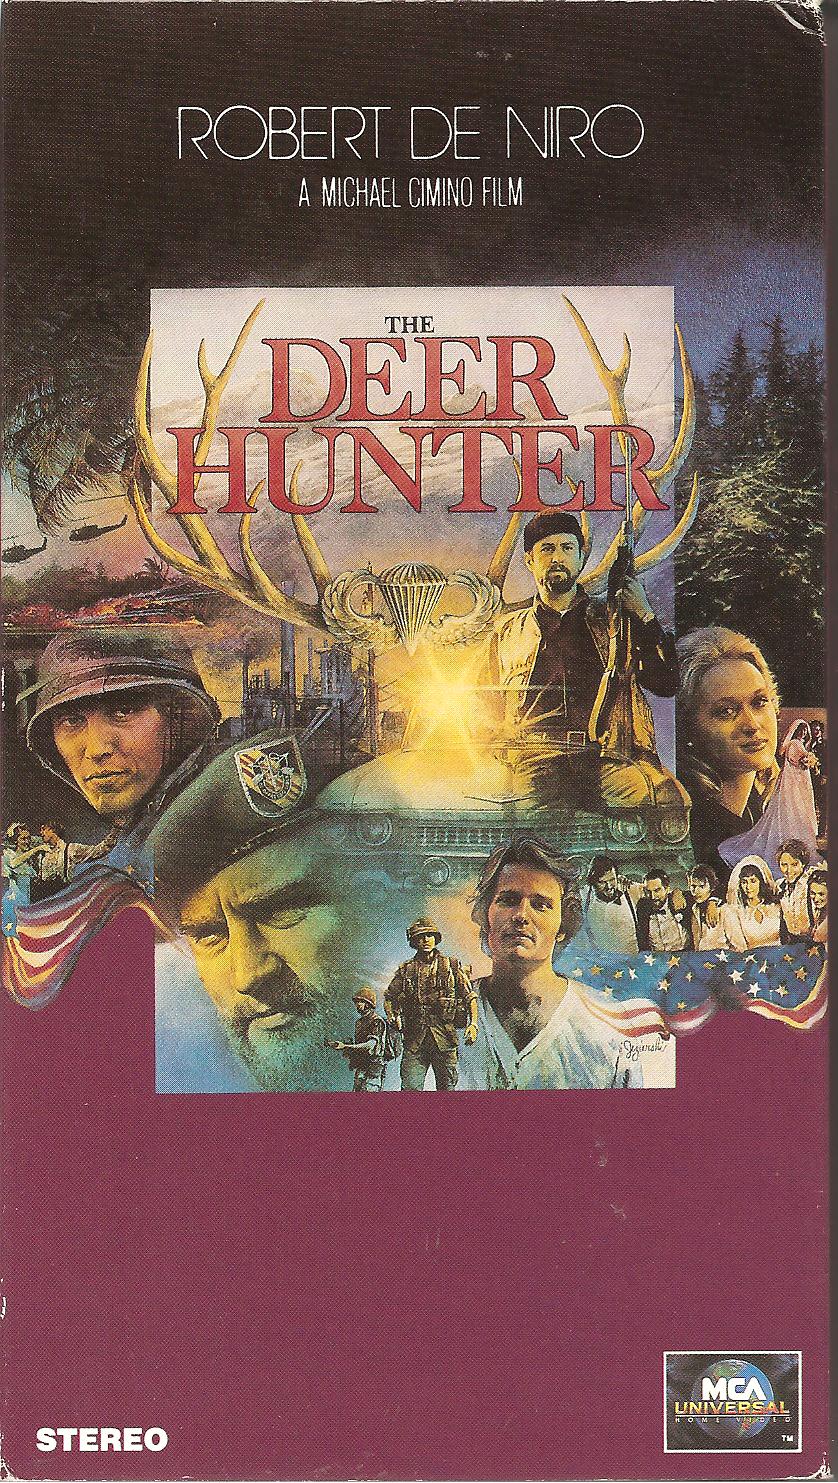 1978 The Deer Hunter